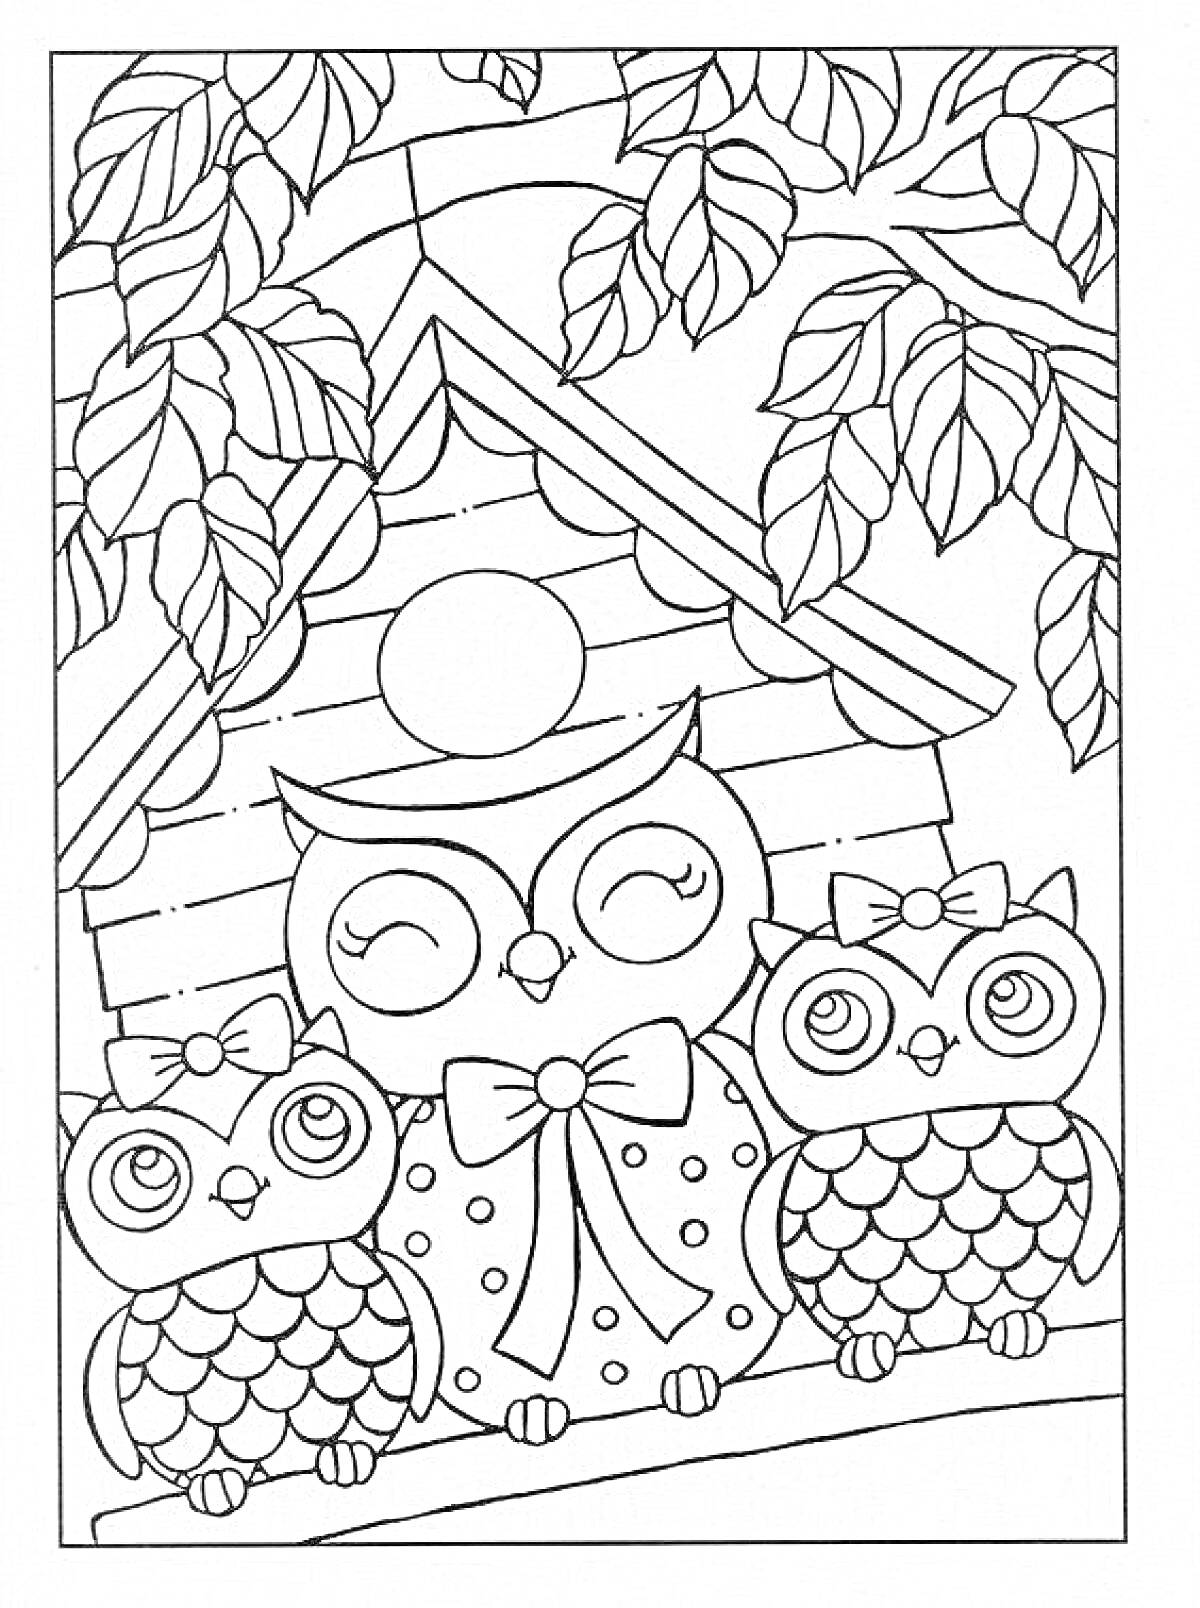 Раскраска Дом совы с тремя совами на ветке, окруженными листьями